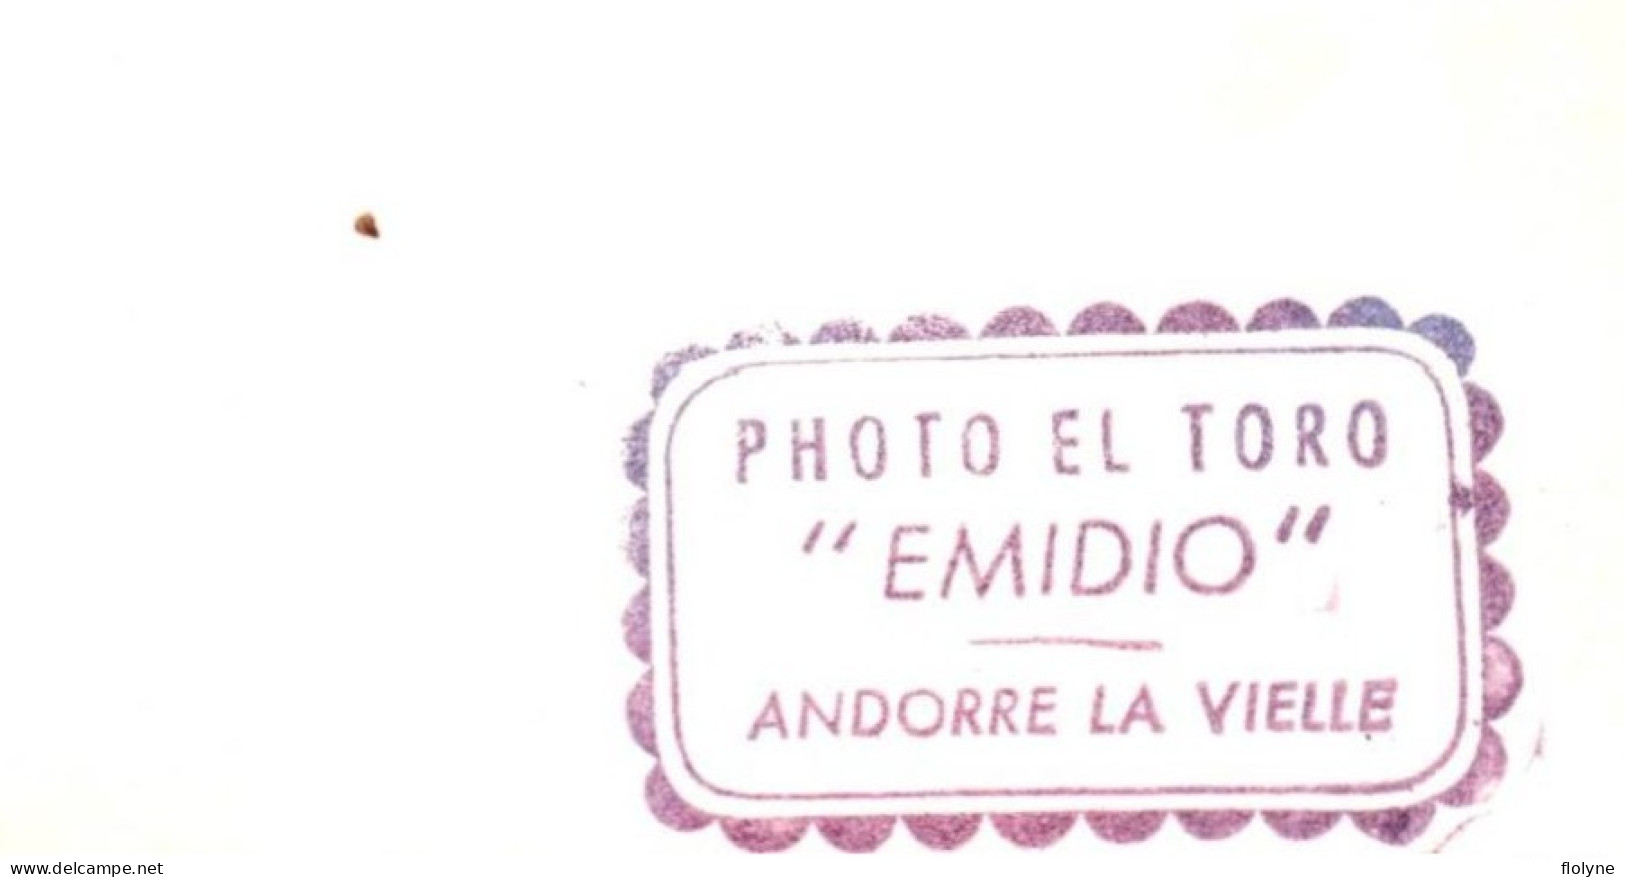 Andorre La Vieille - Carte Photo - Surréalisme Montage - Femme Enfants Décor De Corrida - Photographe EL TORO - Andorra - Andorre